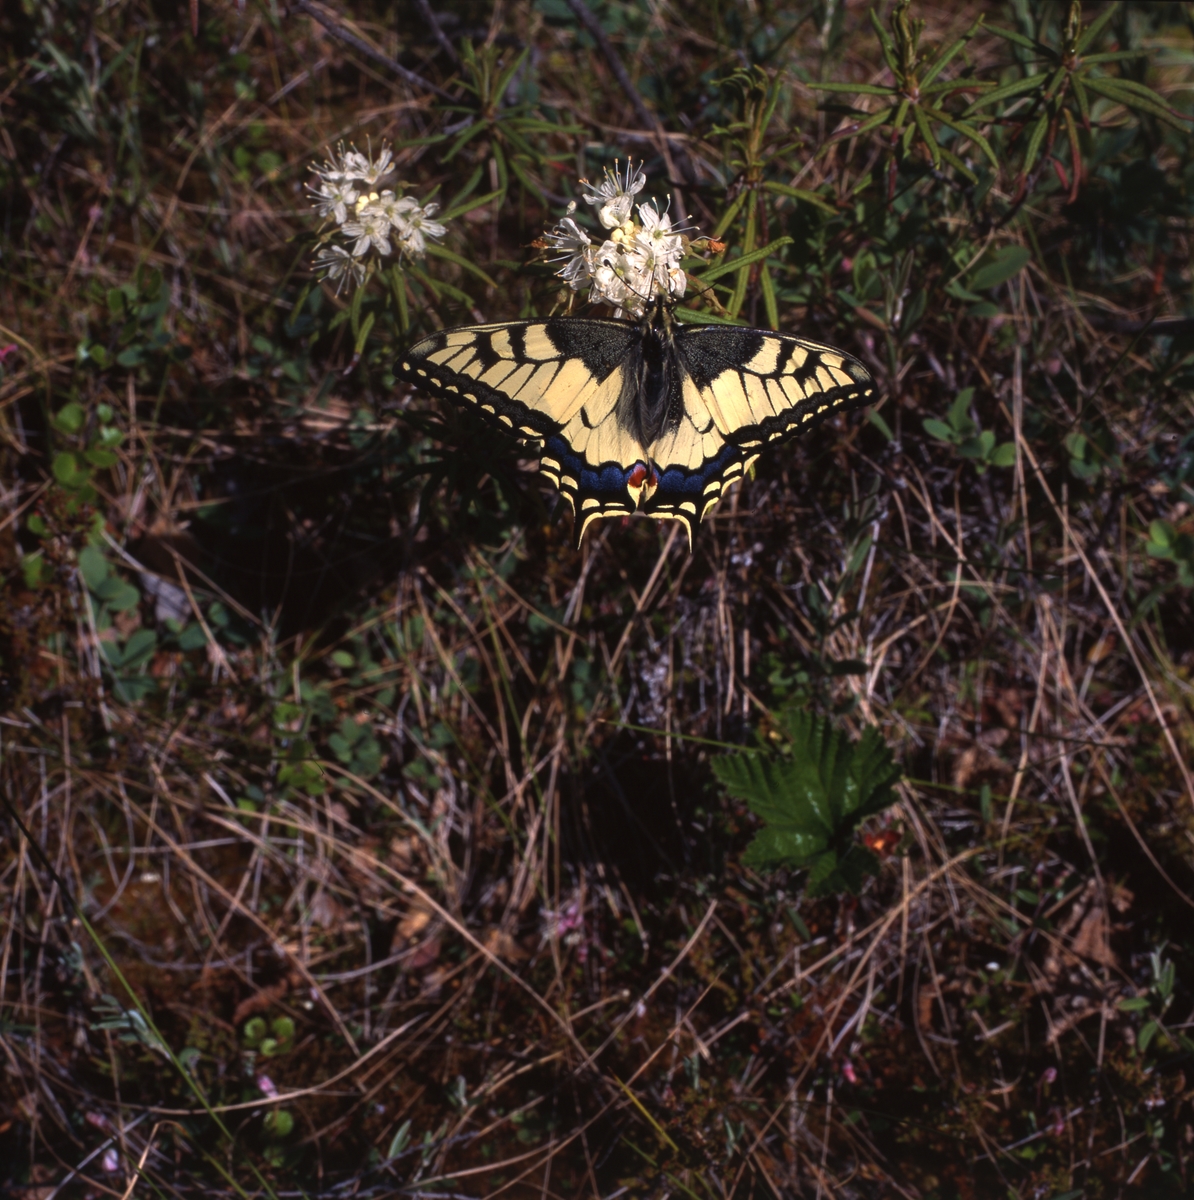 Makaonfjäril (Papilio machaon) som även kallas för för svalstjärt eller parasollfjäril och hör till familjen riddarfjärilar. Här vid Stråsjön 25 juni 1996.